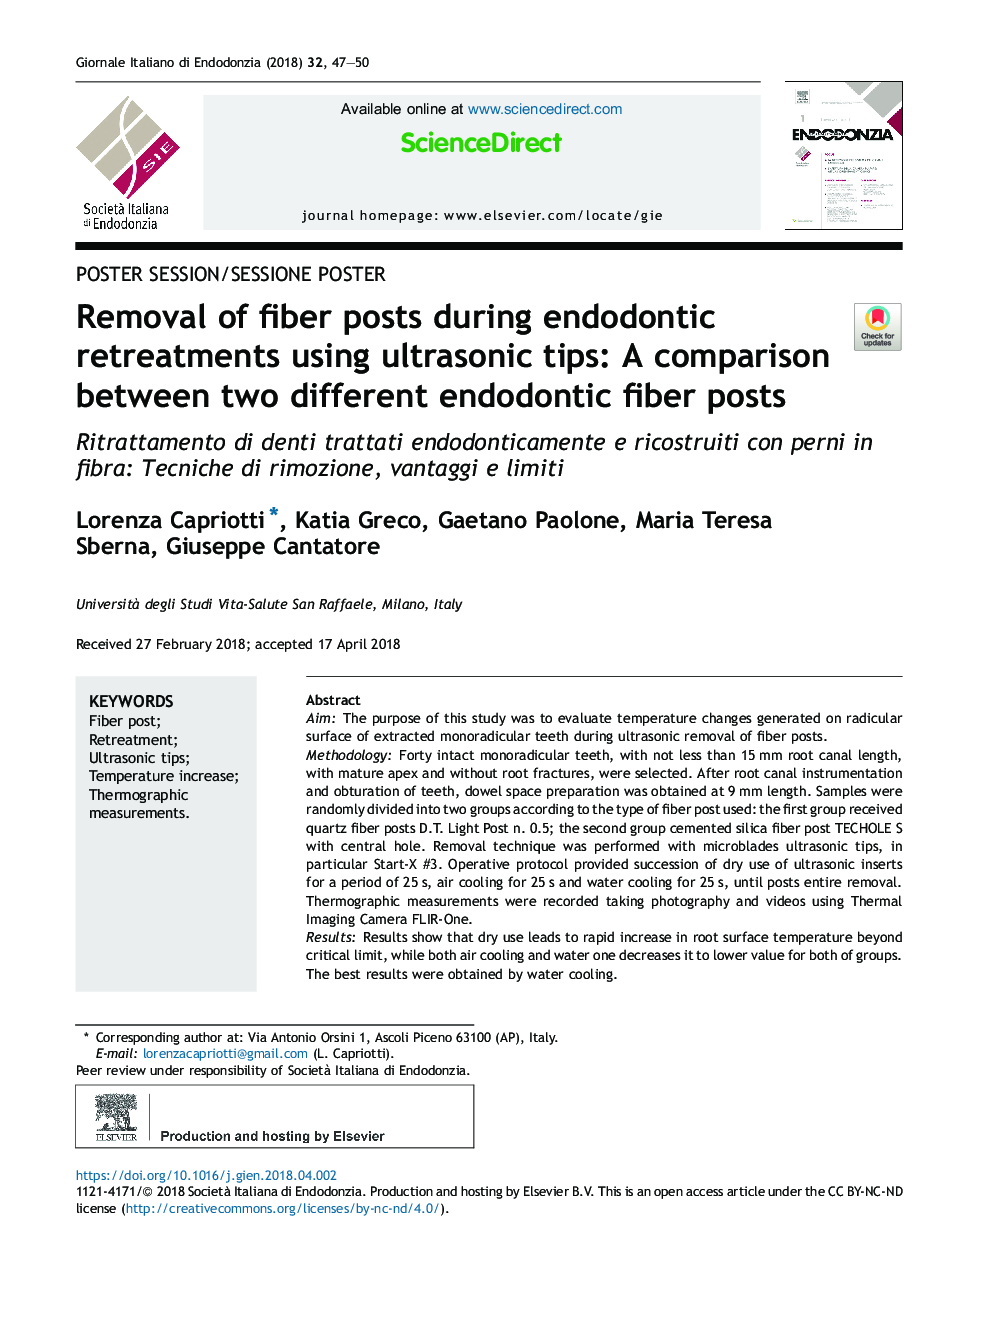 حذف پست های فیبر در حین درمان با اندودونتیک با استفاده از راهنمایی های اولتراسونیک: مقایسۀ دو پست فیبرهای اندودنتیتی مختلف 